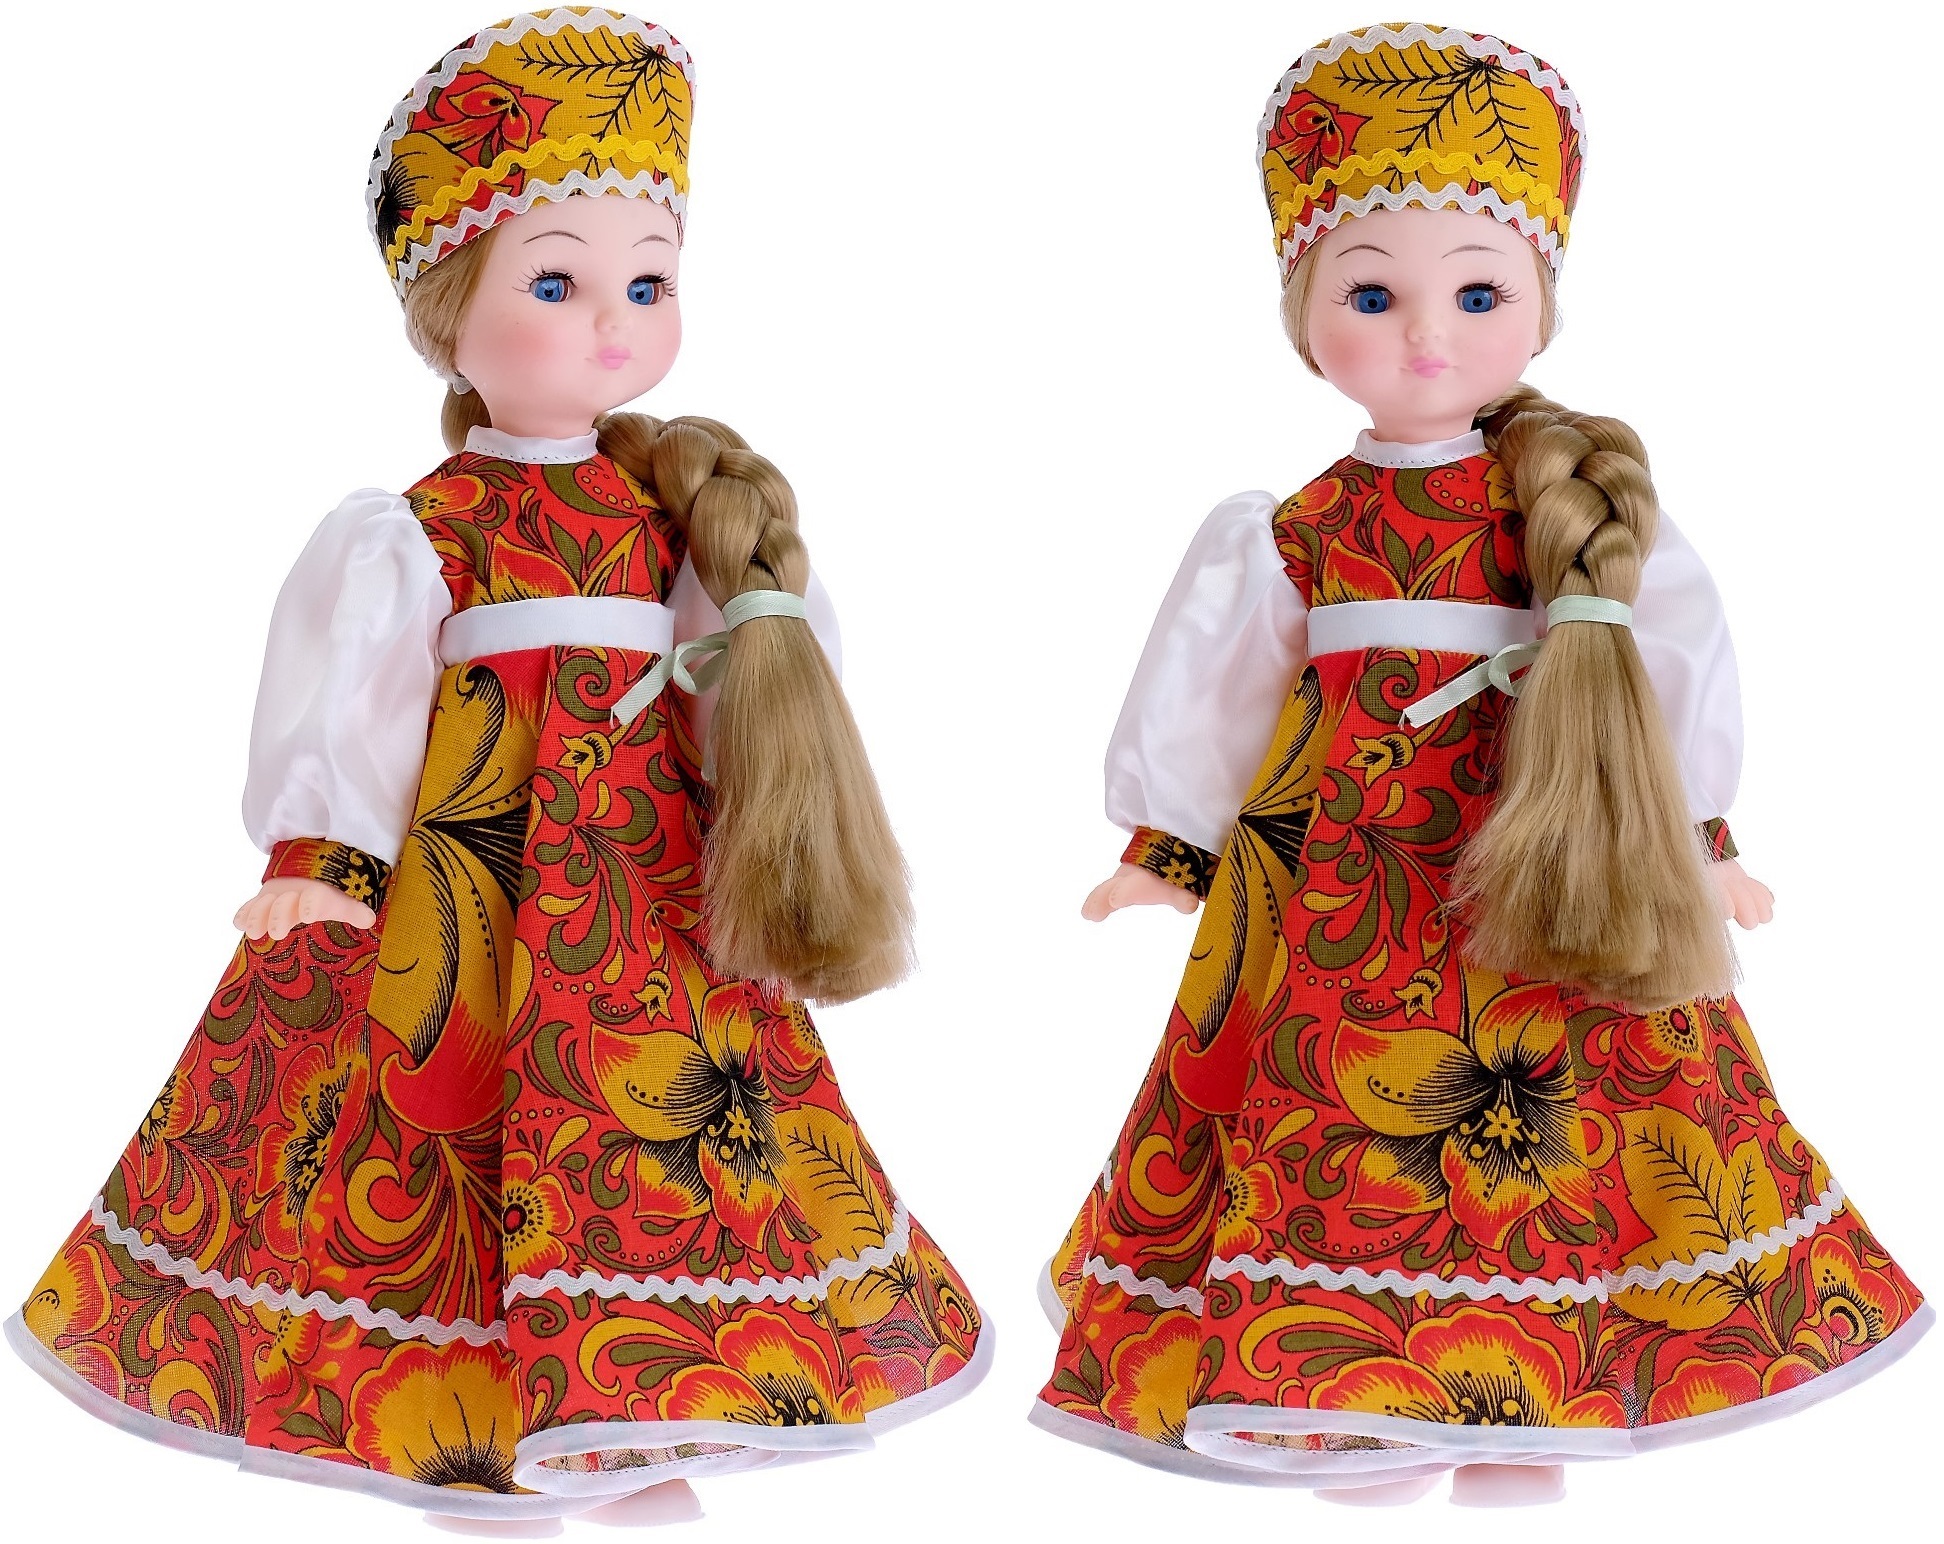 Купить авторские куклы ручной работы в магазине русских сувениров. Доставка по всему миру.